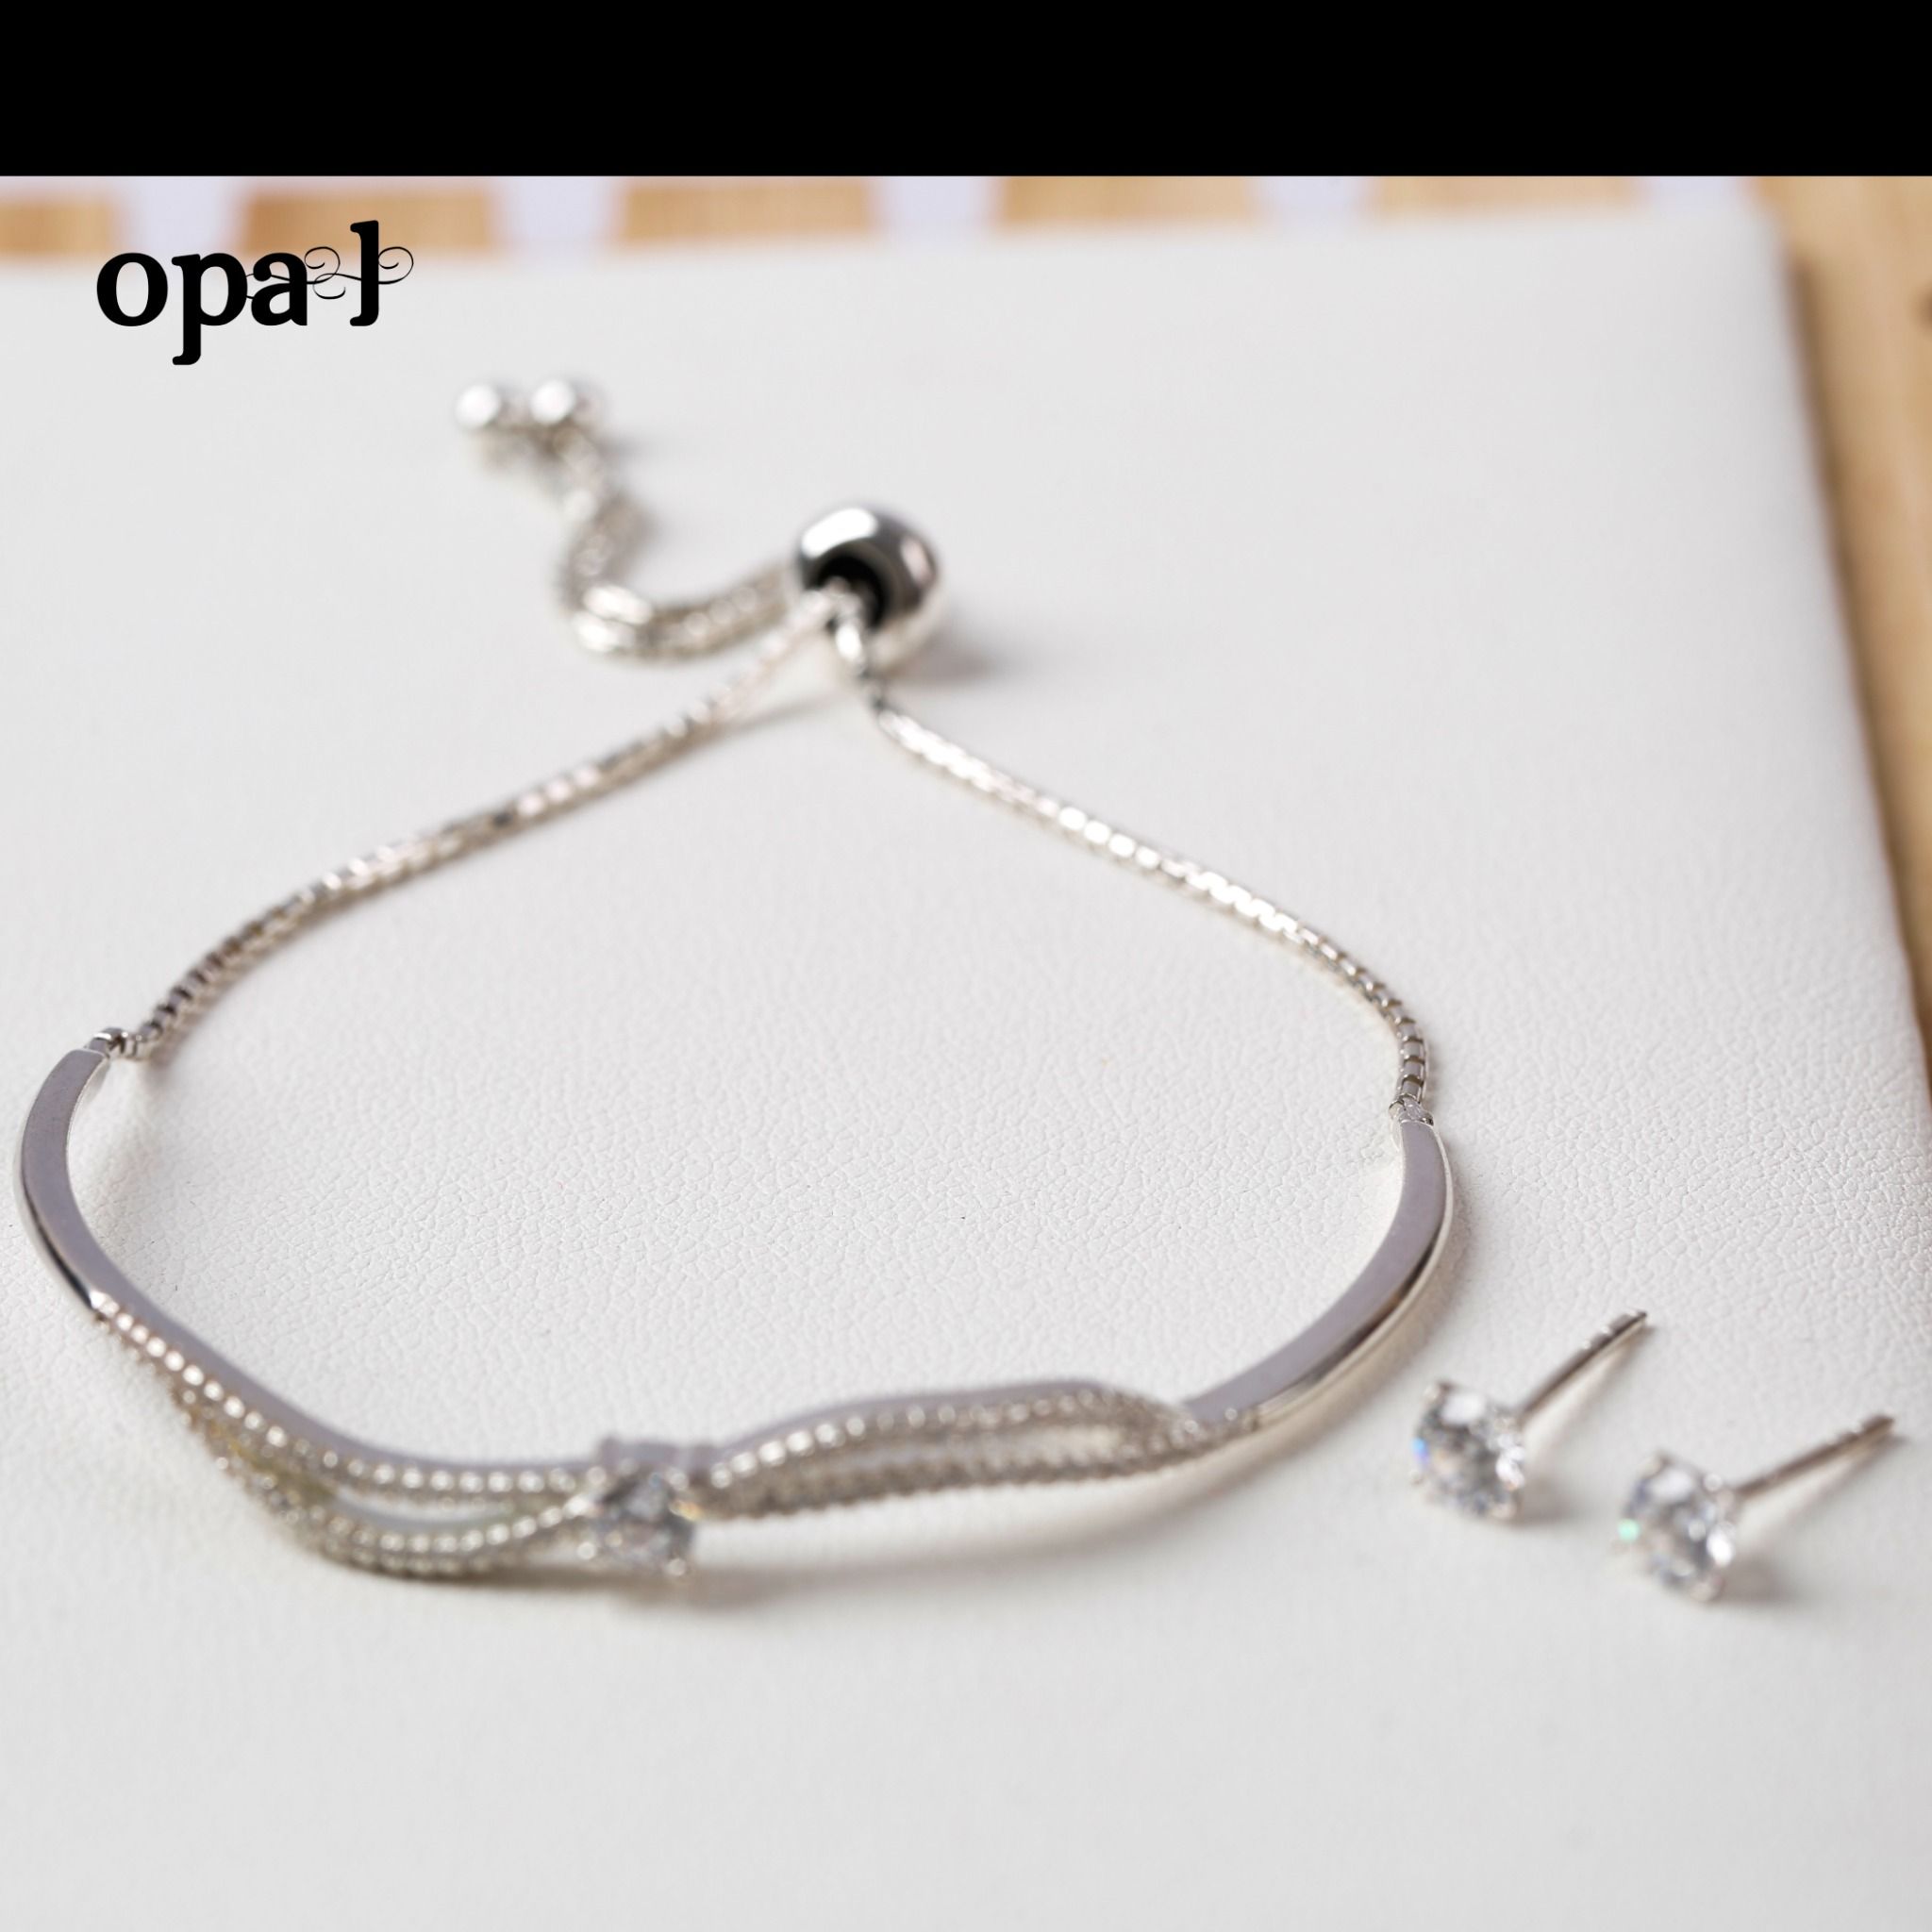  Bộ lắc tay và hoa tai bạc thiết kế phong cách hiện đại , trẻ trung thương hiệu Opal 